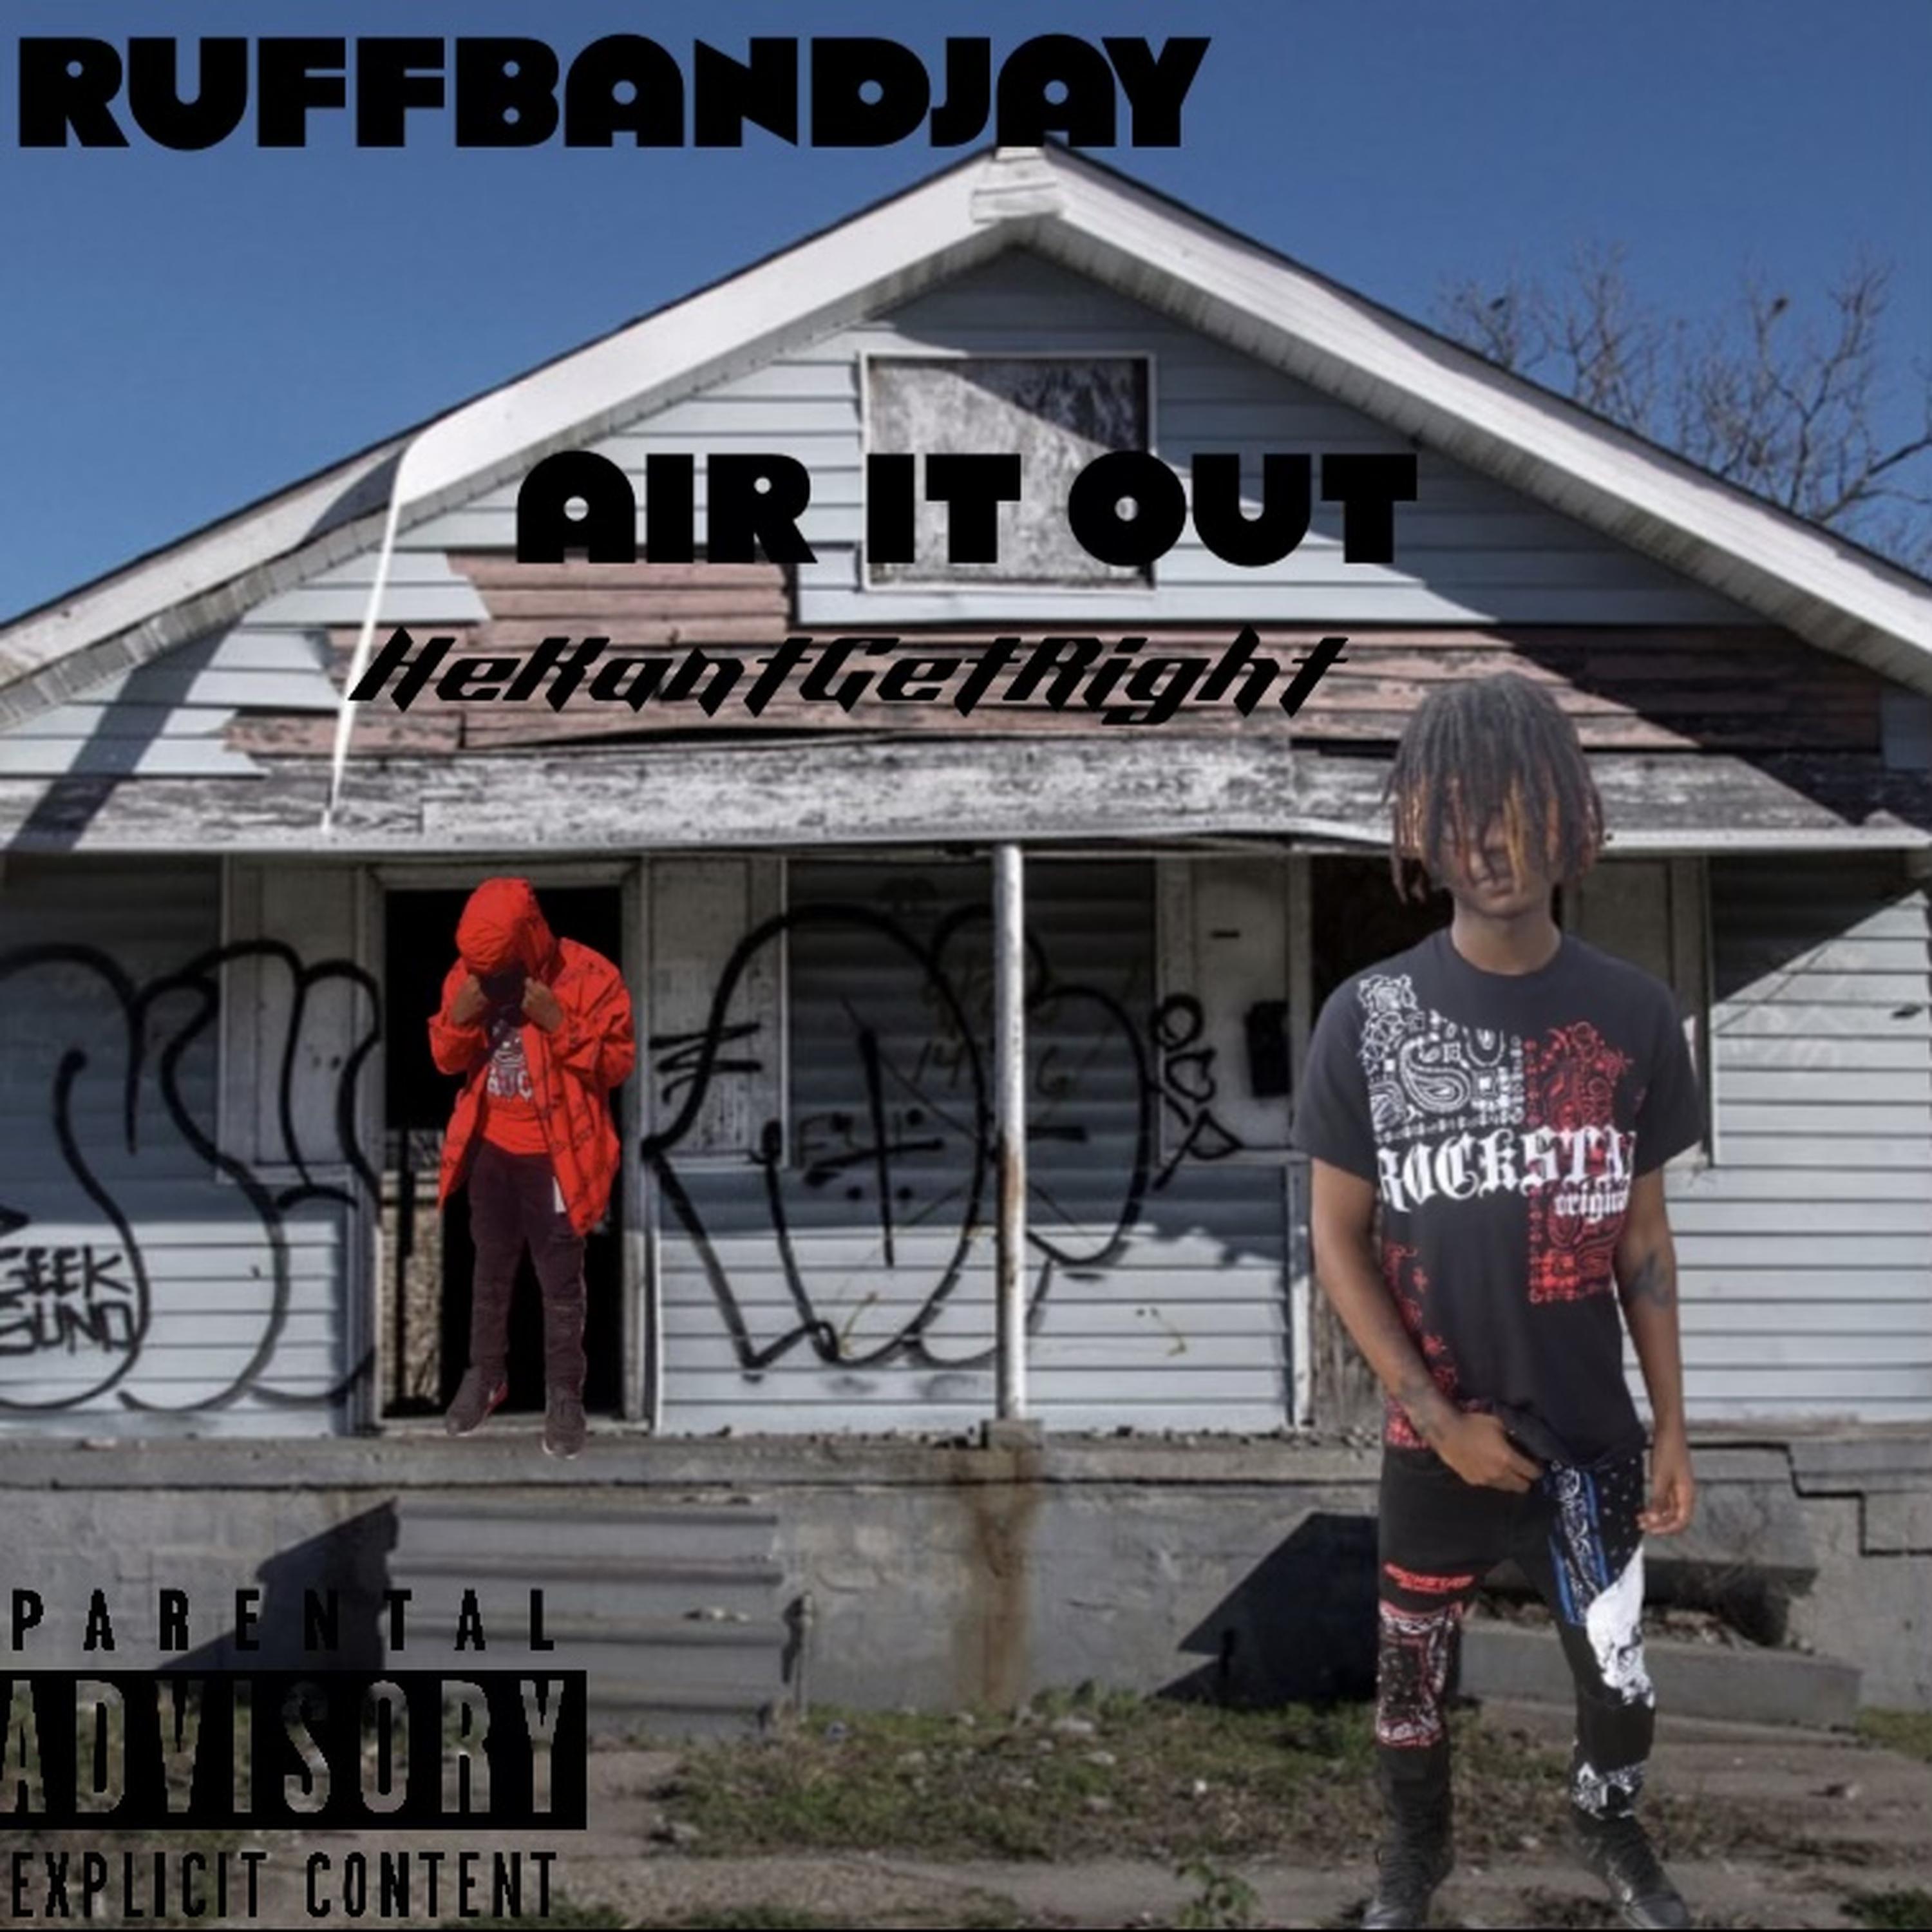 RuffbandJay - Air It Out